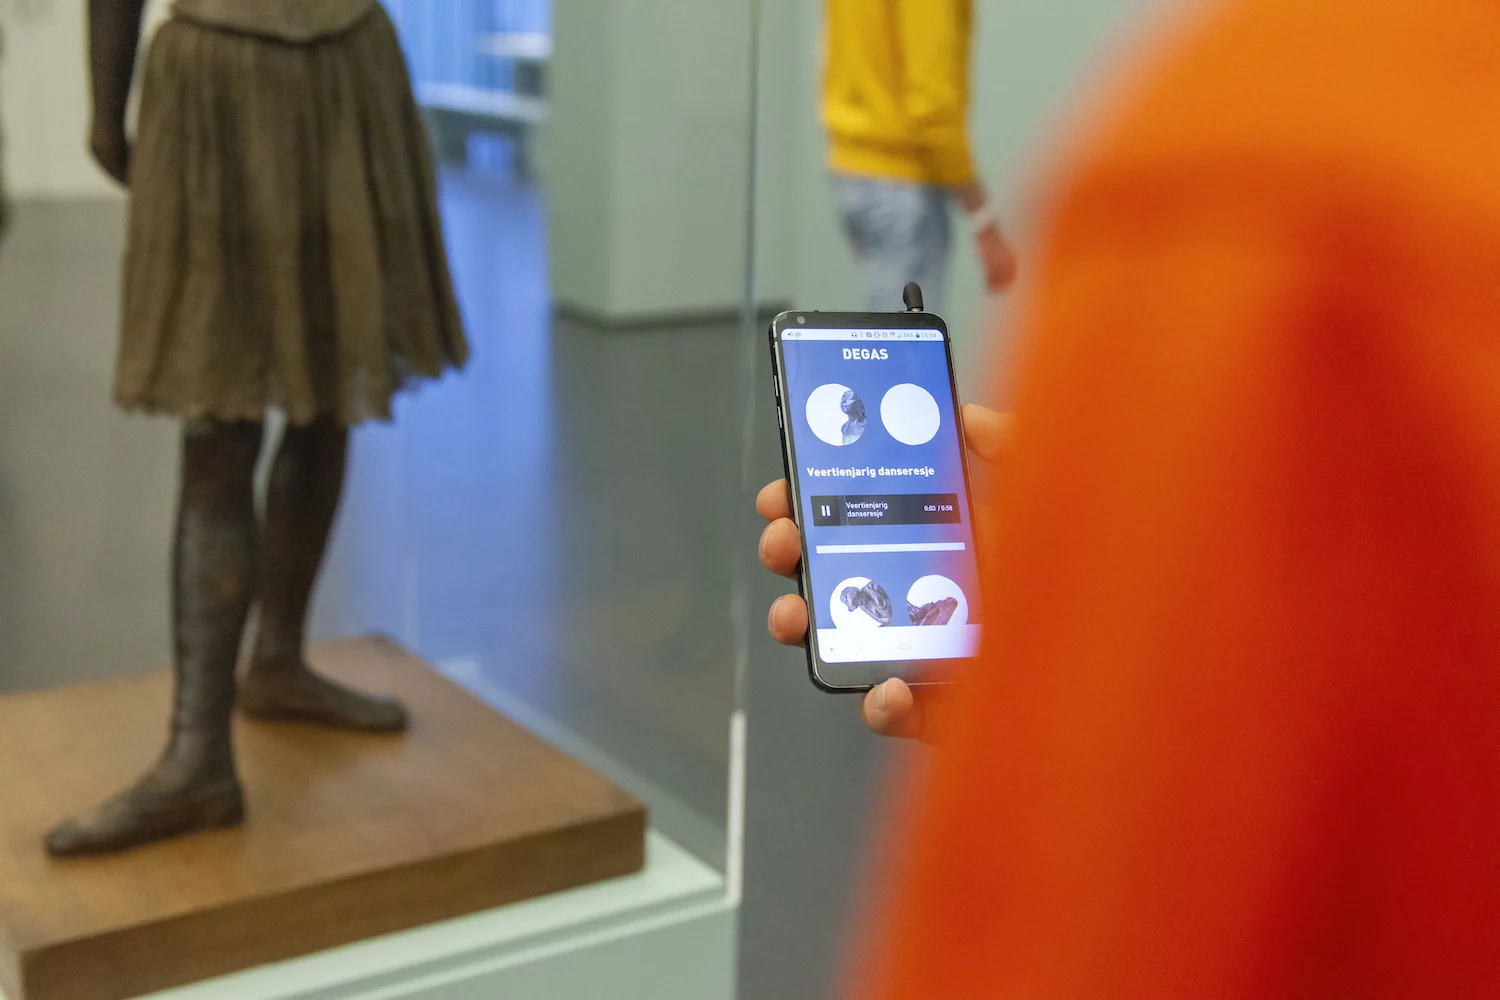 Een bezoeker van de Kunsthal luistert een audio opname op zijn telefoon waarin Remses Rafela zijn blik op het veertienjarige danseresje deelt.